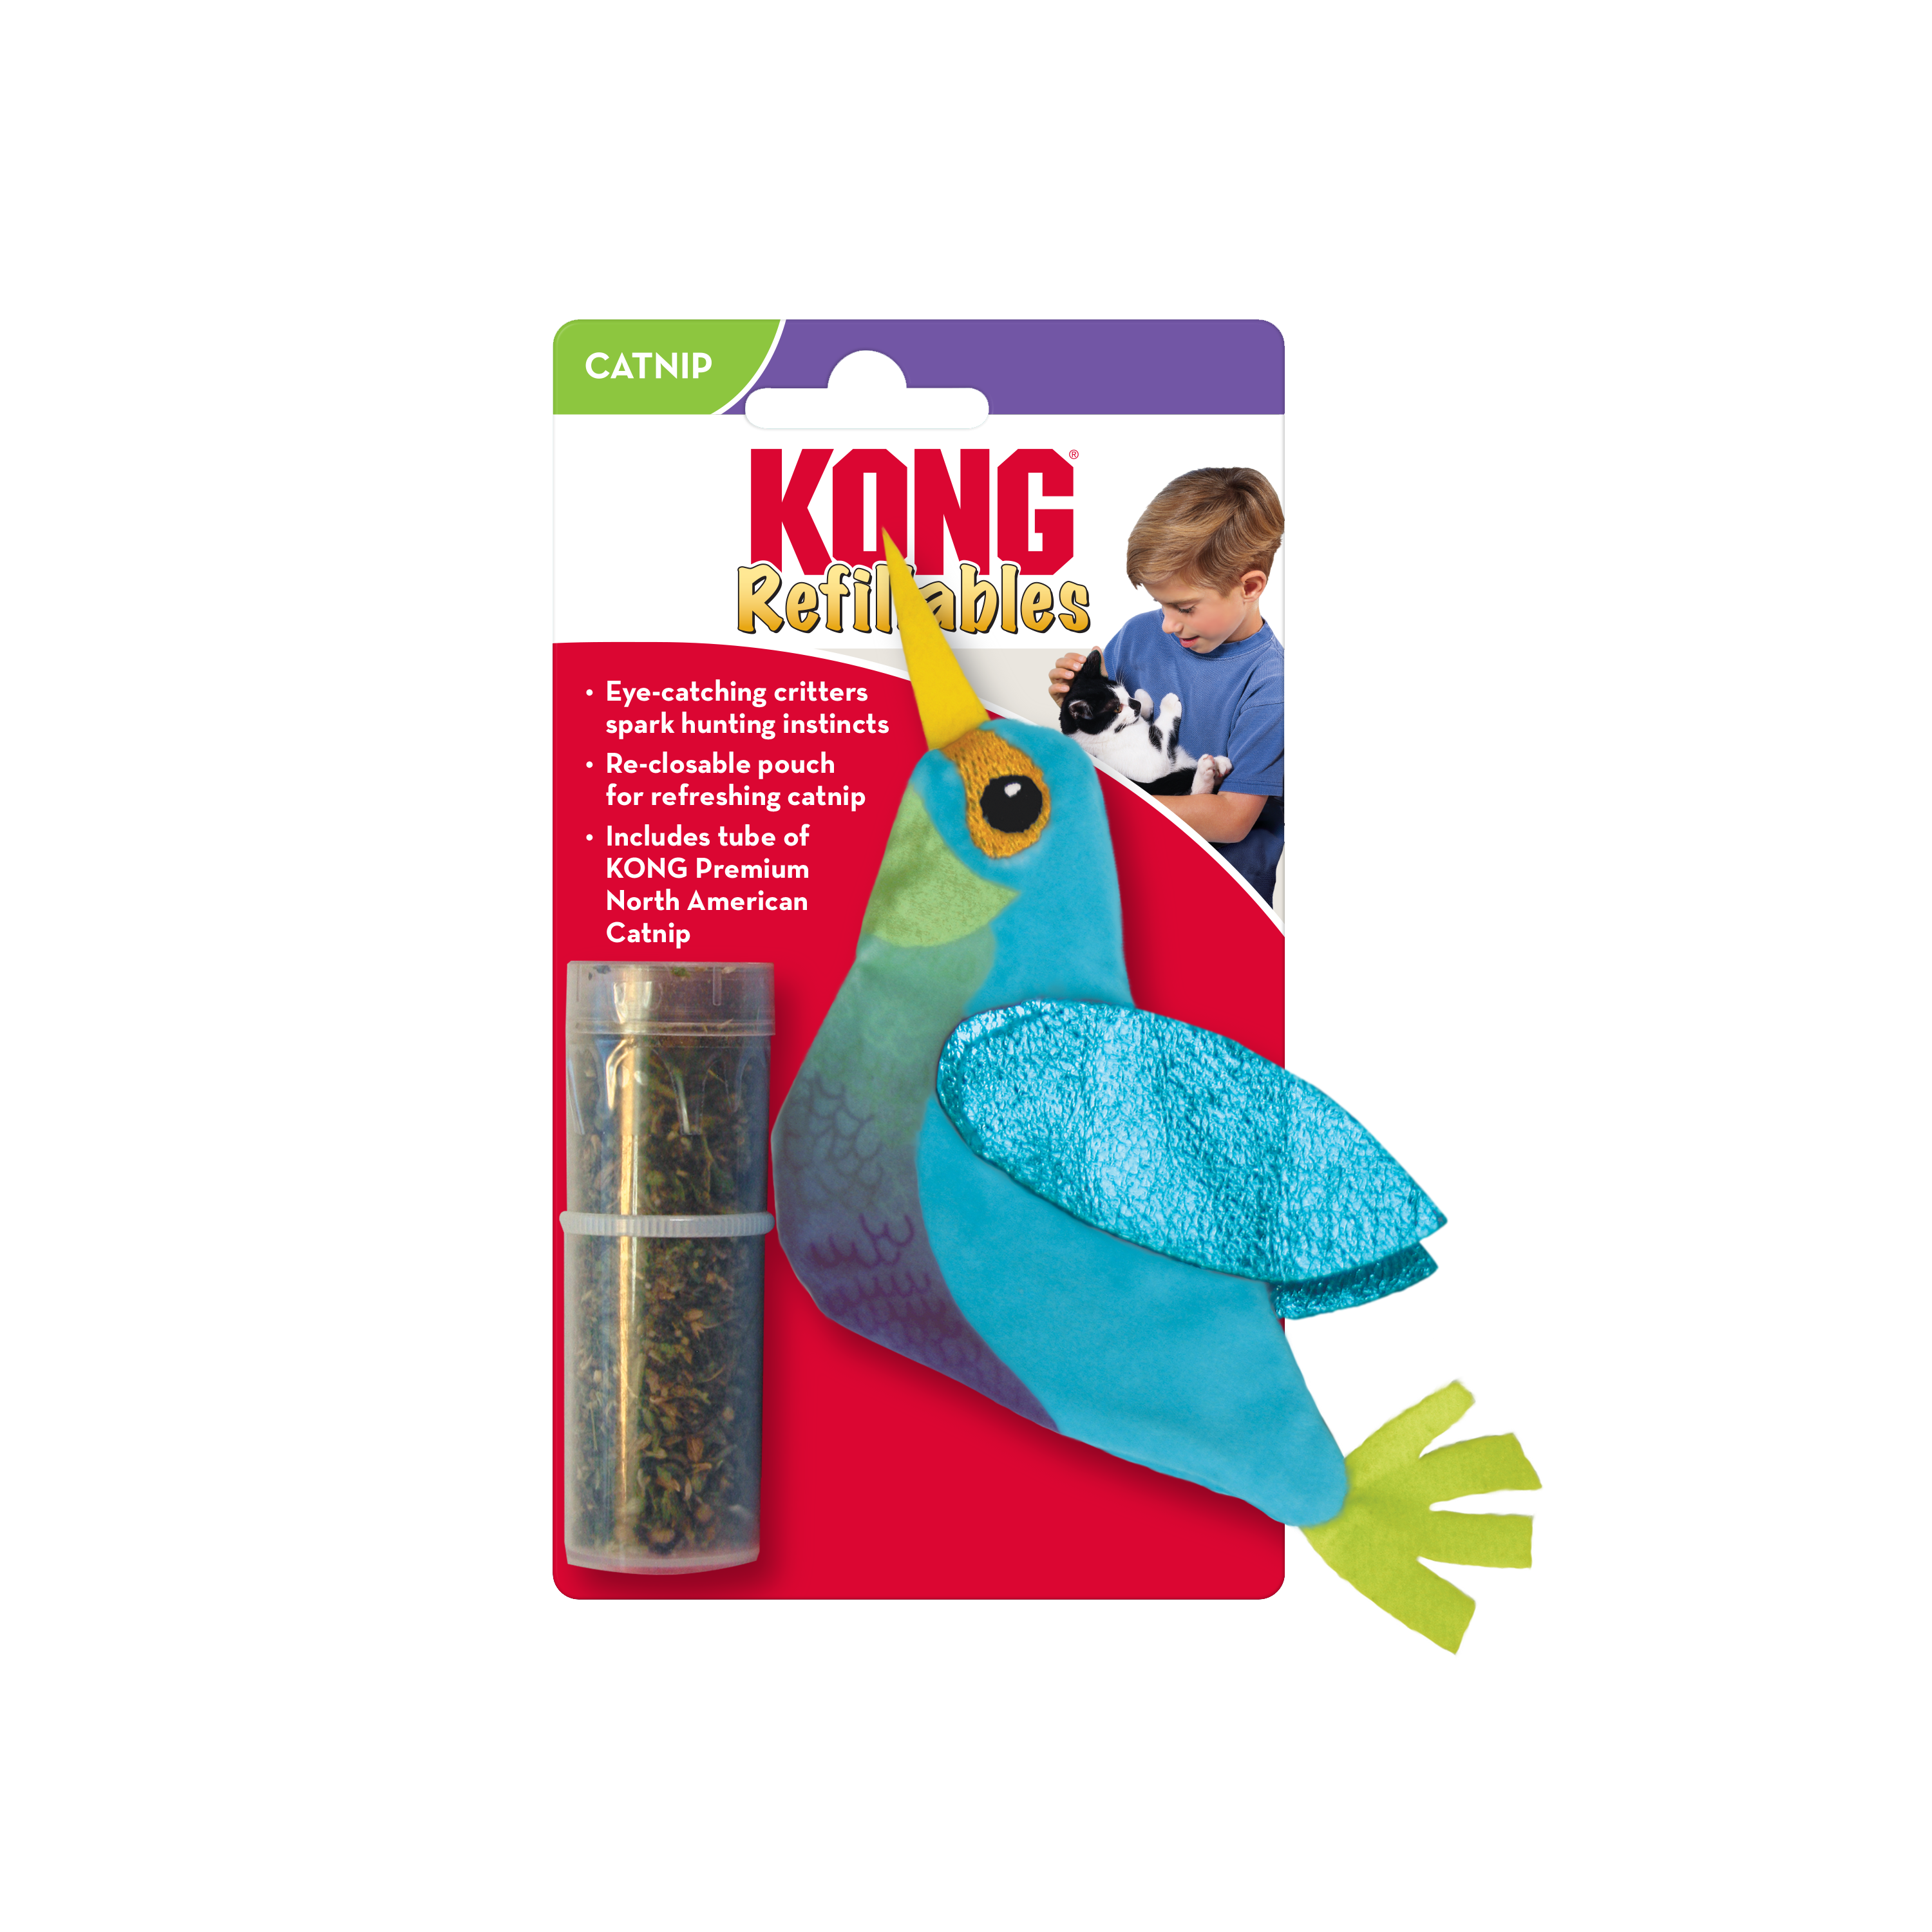 Refillables Hummingbird - Colibrí Rellenable para Gatos de Kong